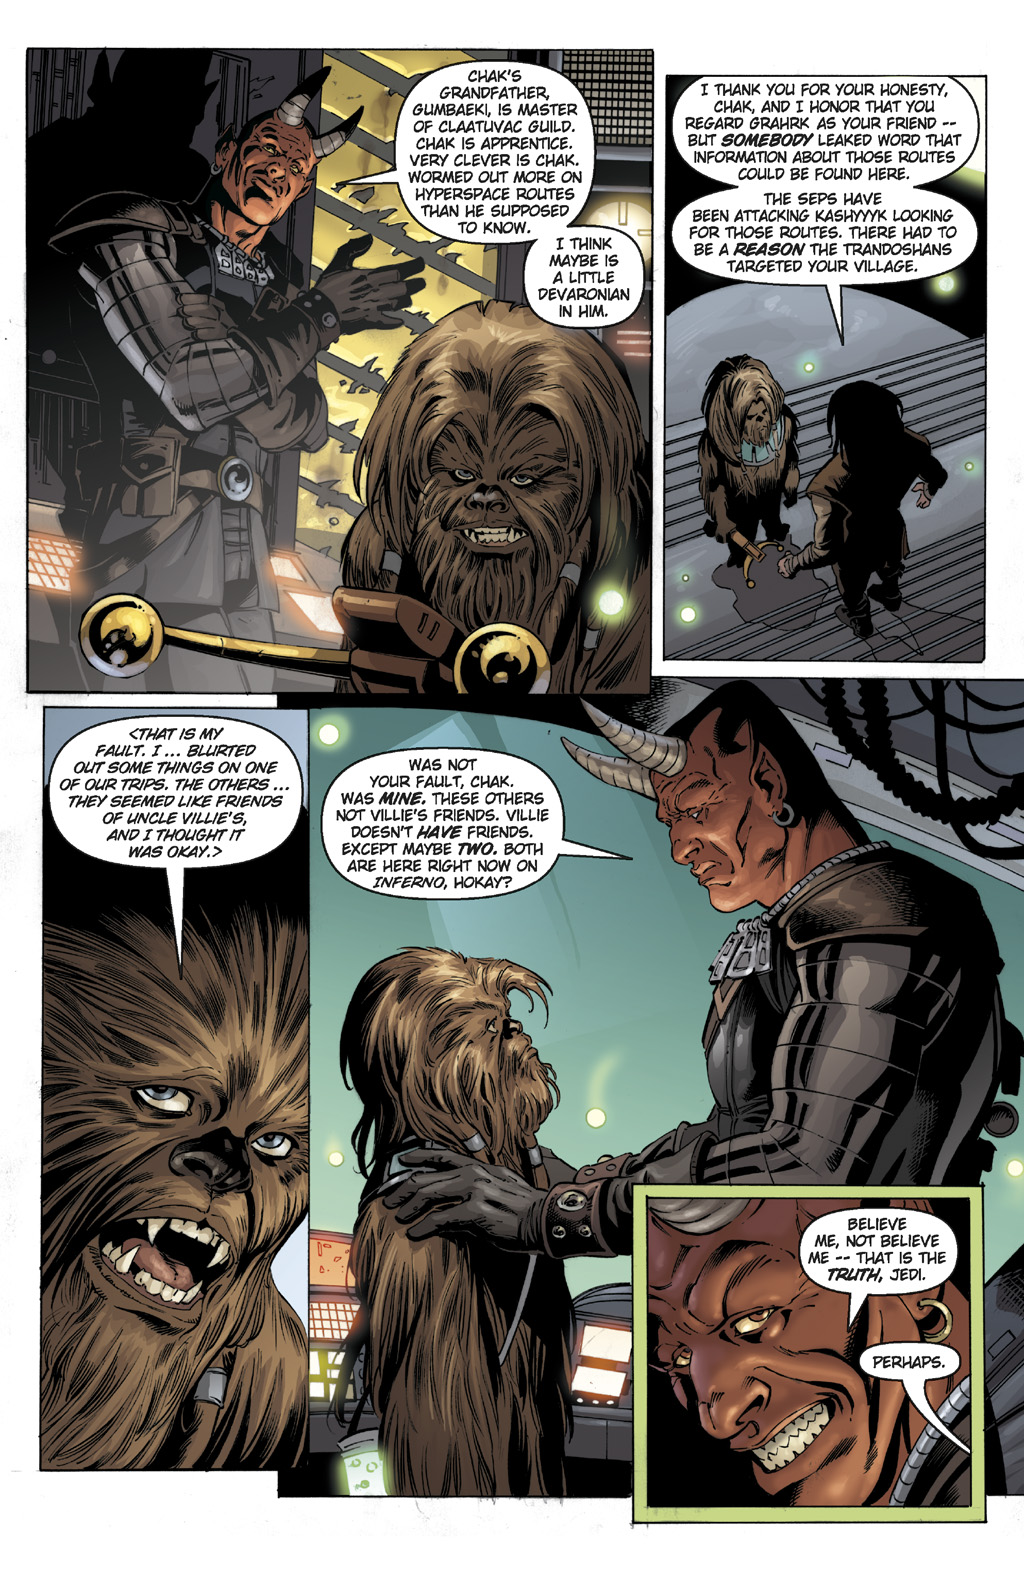 Read online Star Wars: Clone Wars comic -  Issue # TPB 9 - 30